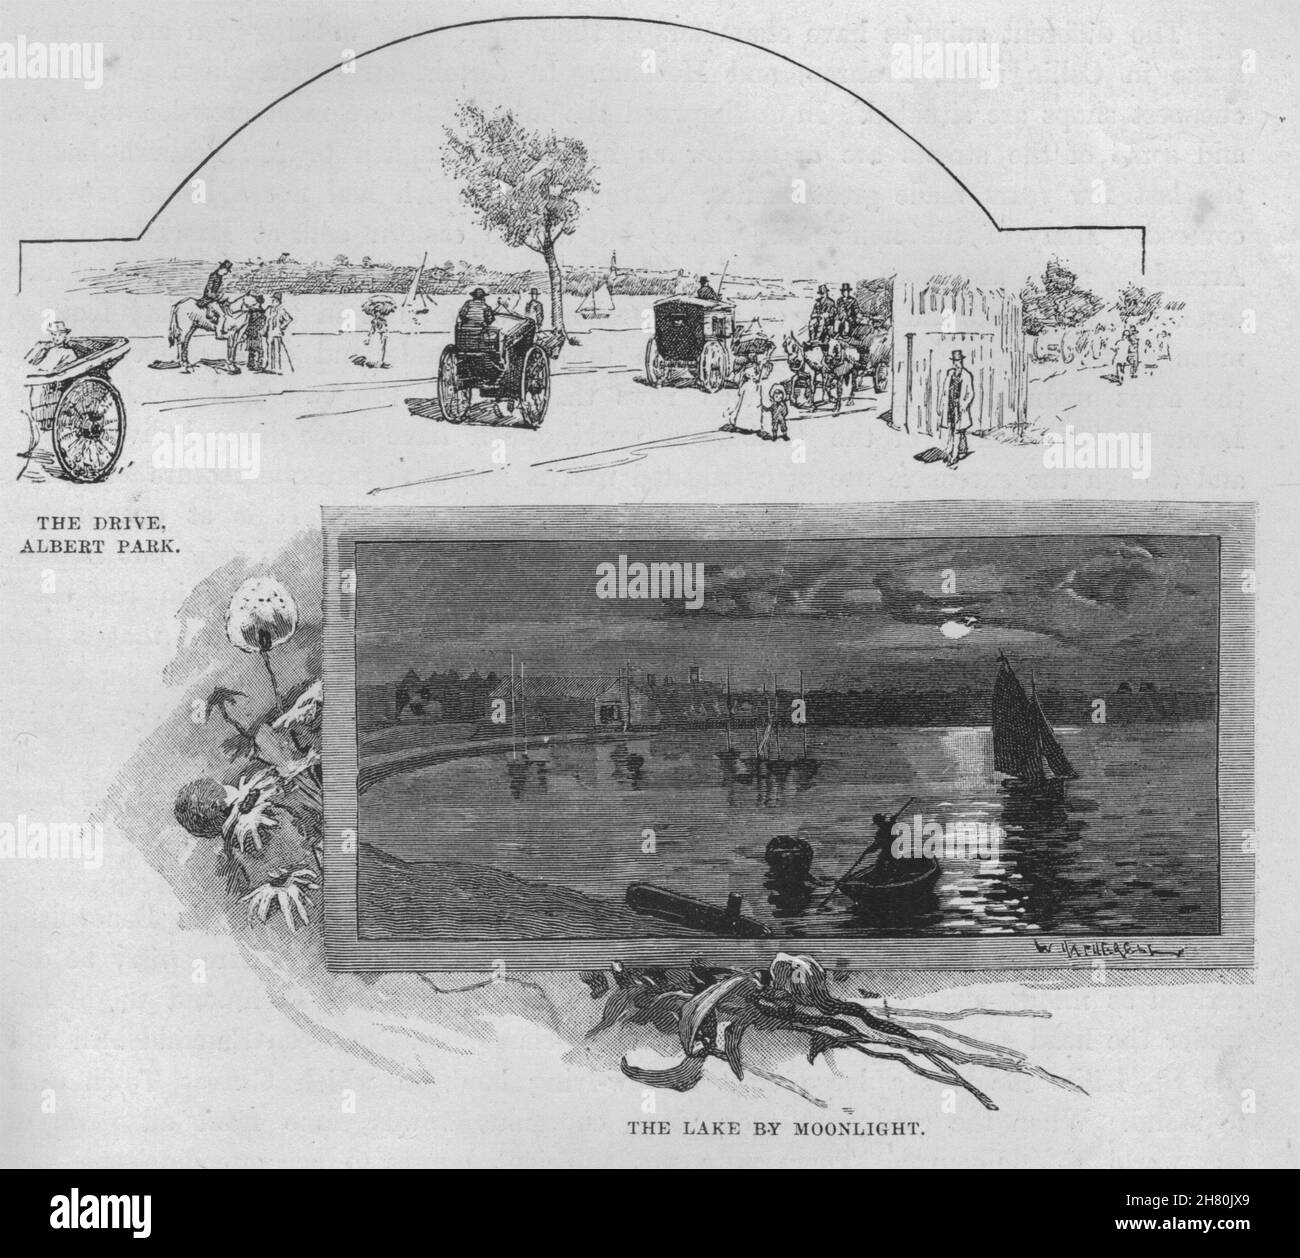 Der Antrieb, Albert Park; der See bei Mondschein. Melbourne. Australien 1890 Drucken Stockfoto